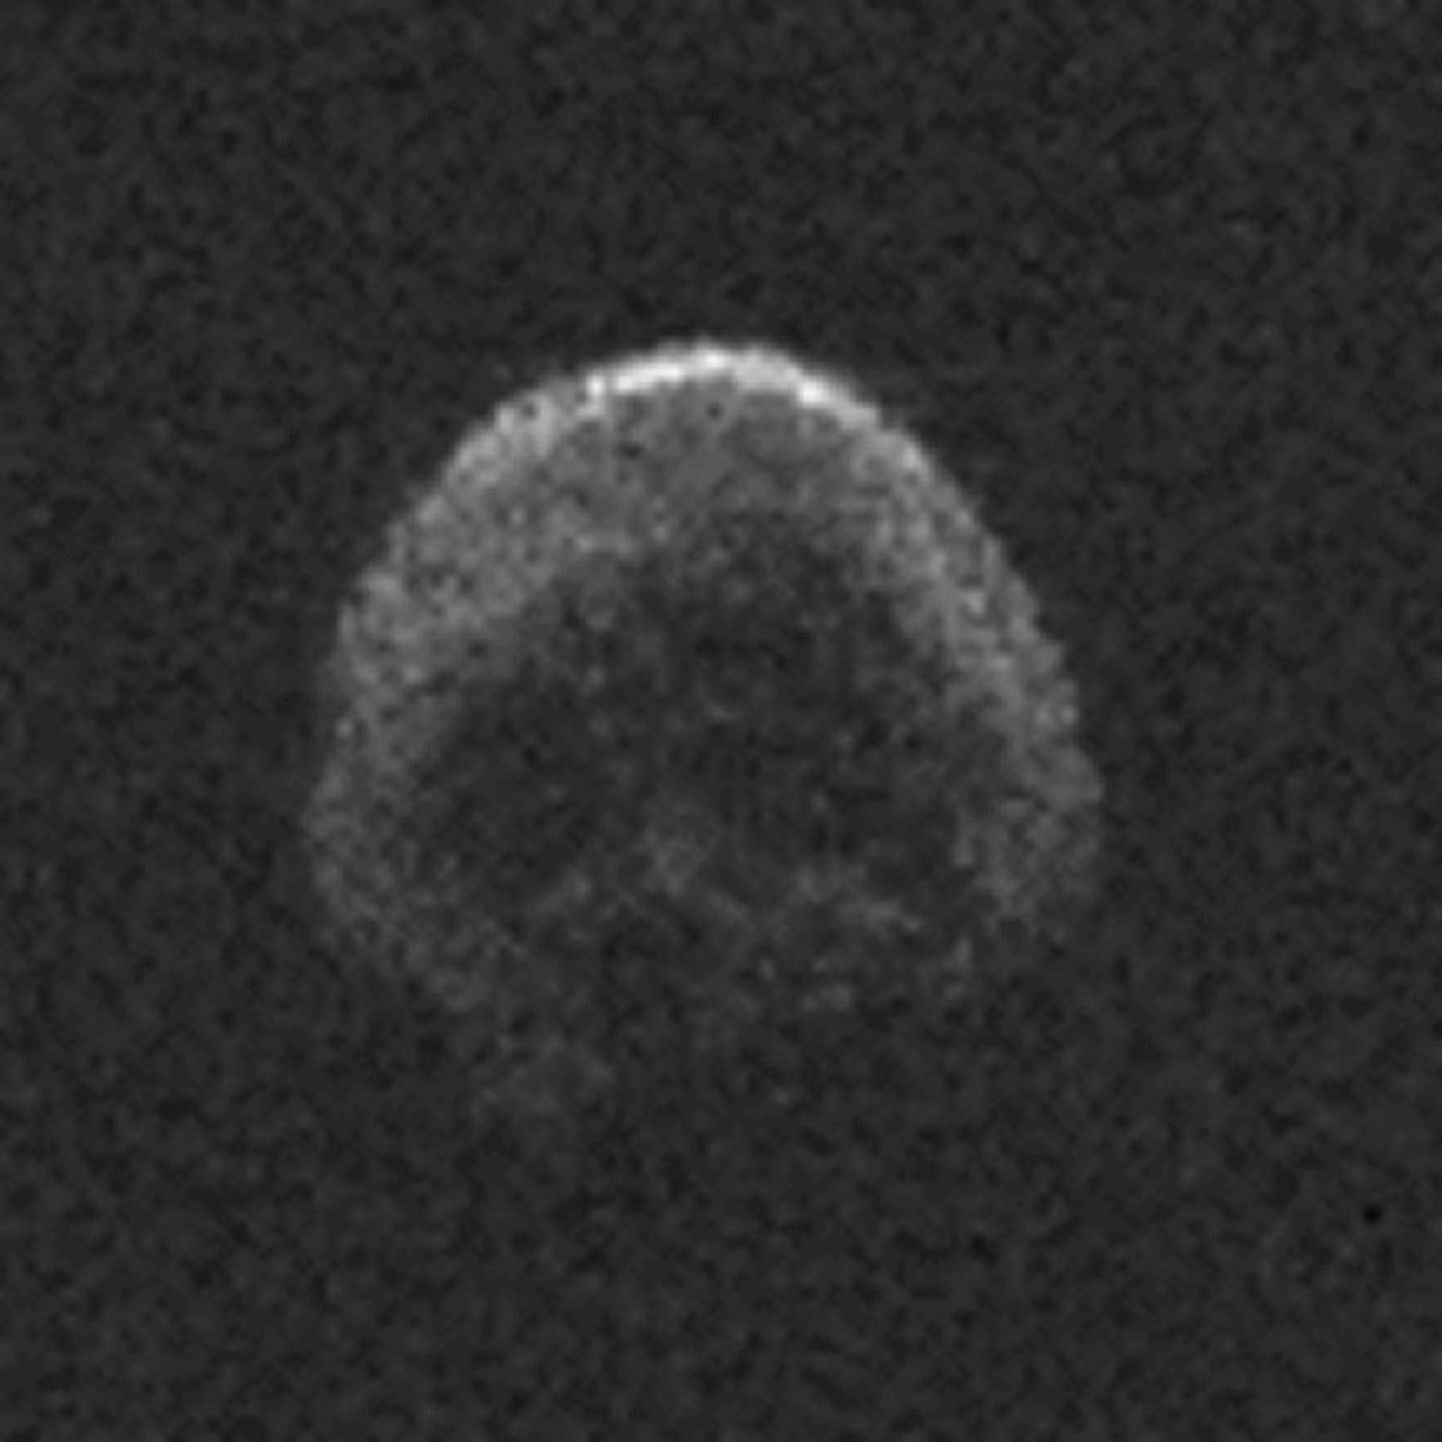 Asteroid 2015 TB145, mis võib olla surnud komeet